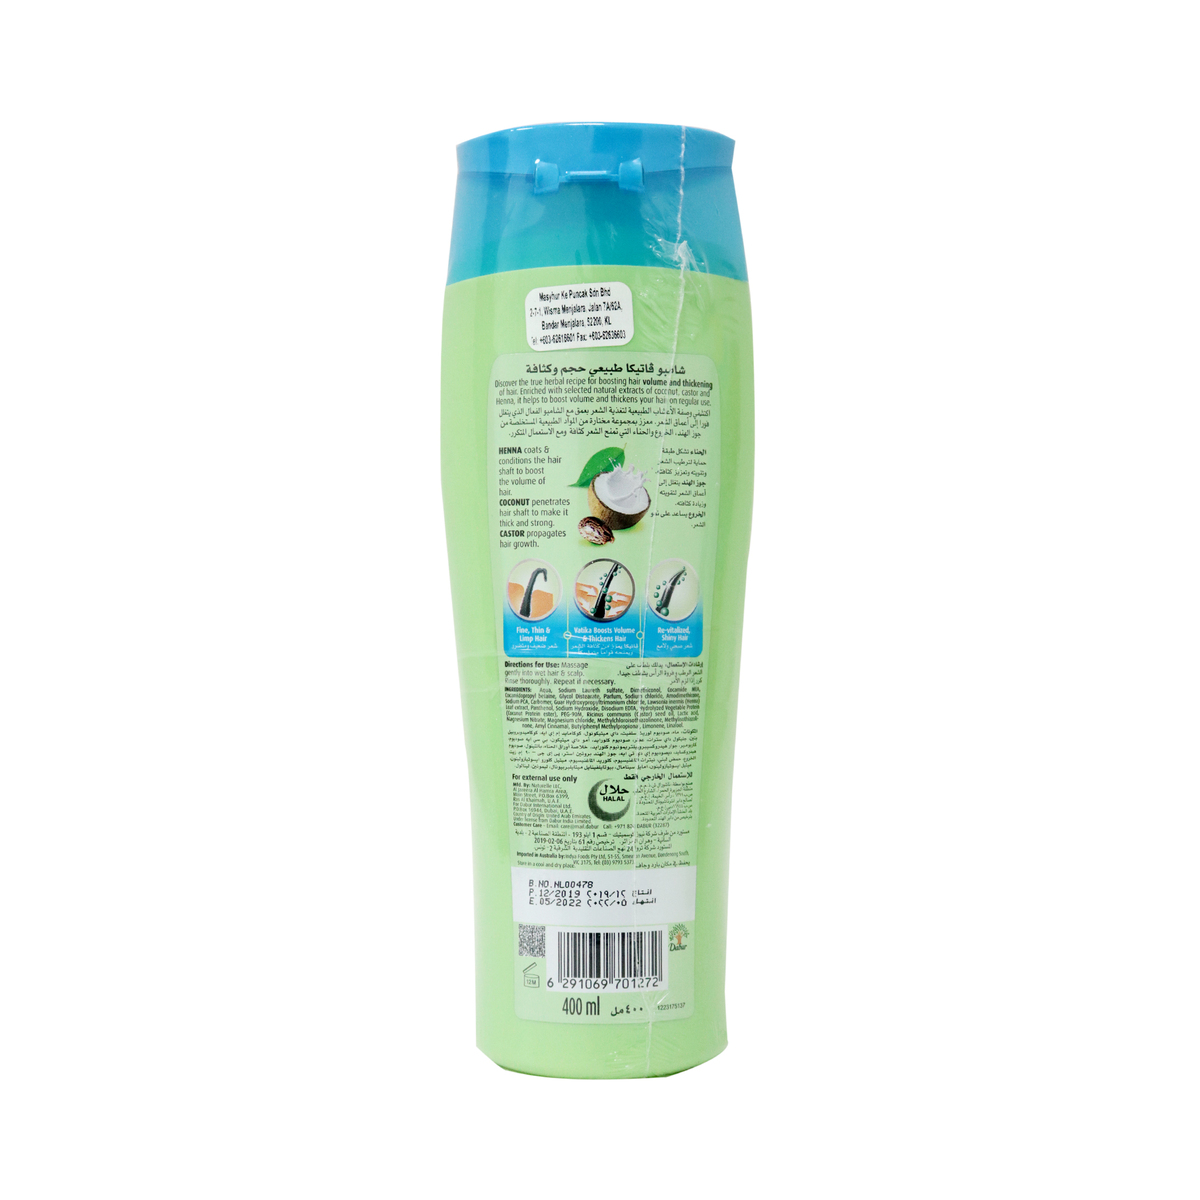 Dabur Vatika Volume And Thickness Shampoo 400ml Online At Best Price